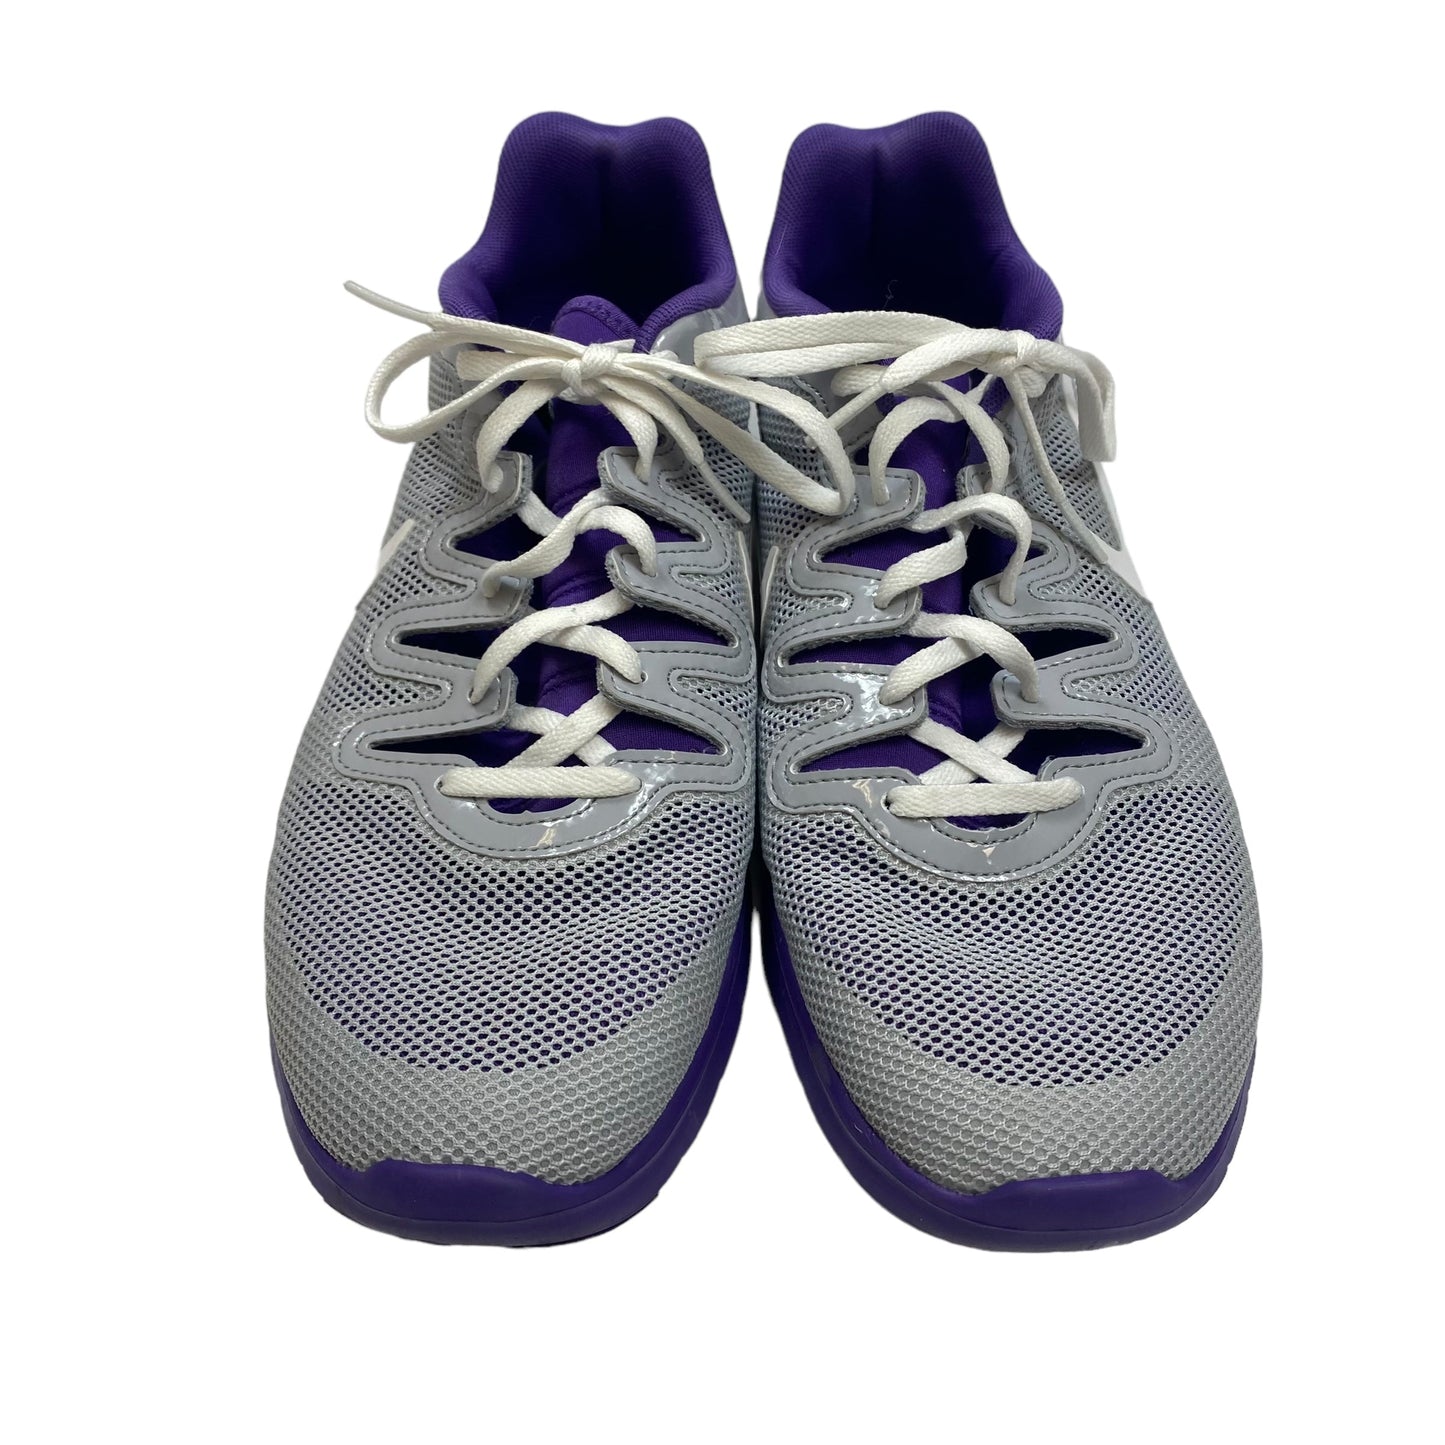 Grey Shoes Athletic Nike, Size 11